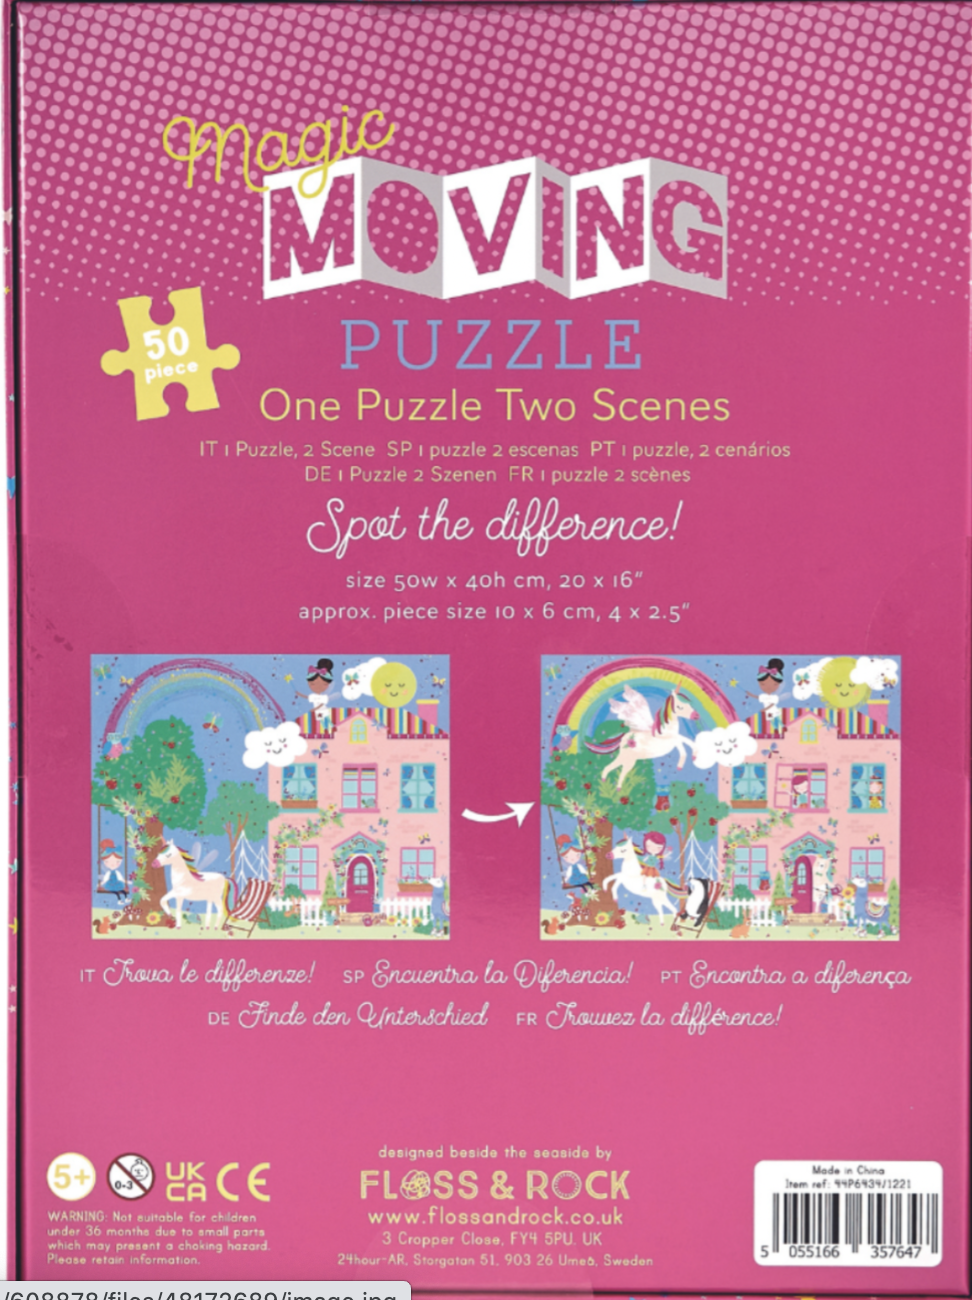 Magic Moving Puzzle